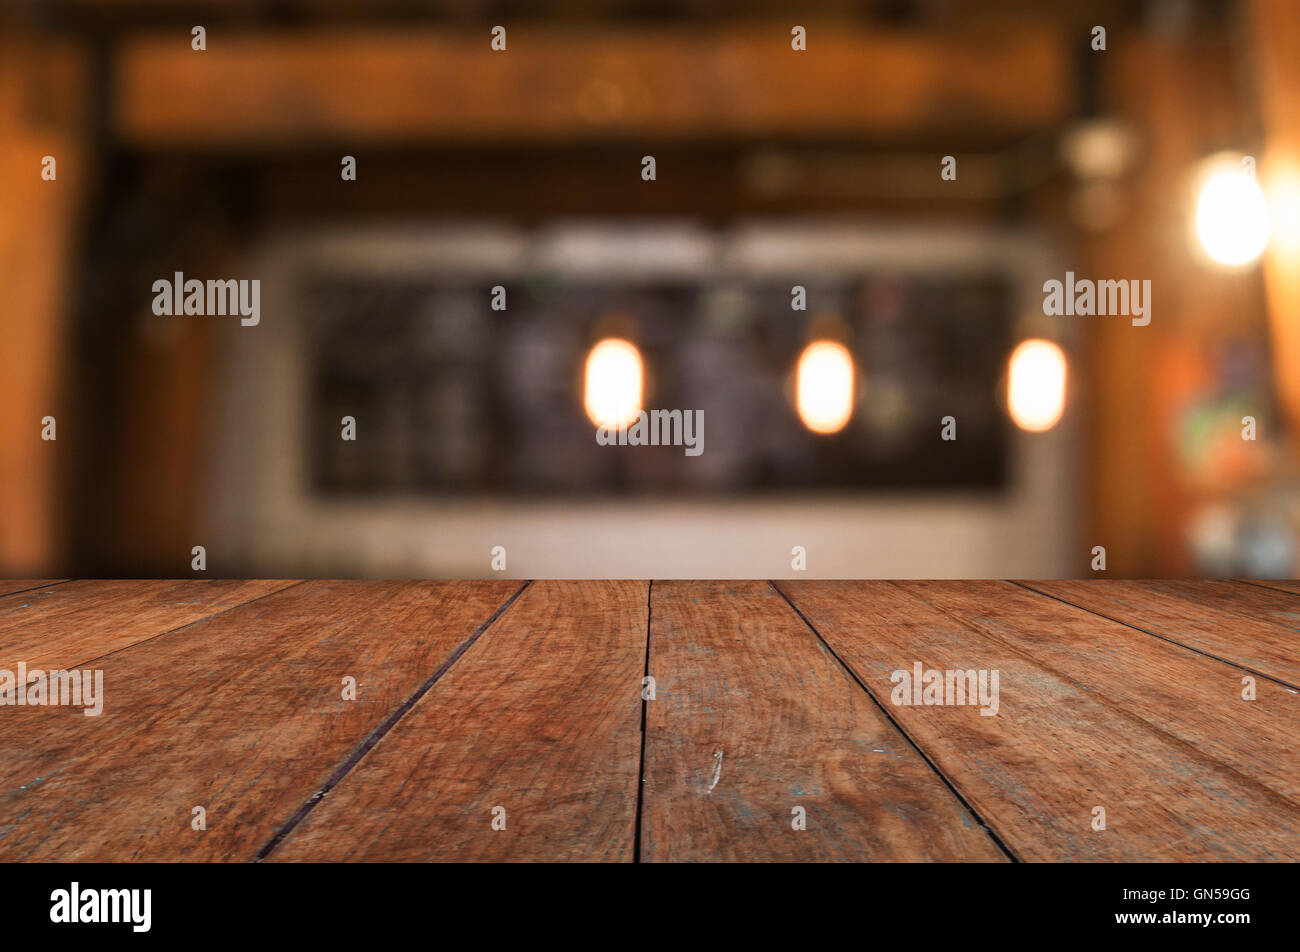 Haut de table en bois avec café blurred abstract background Banque D'Images